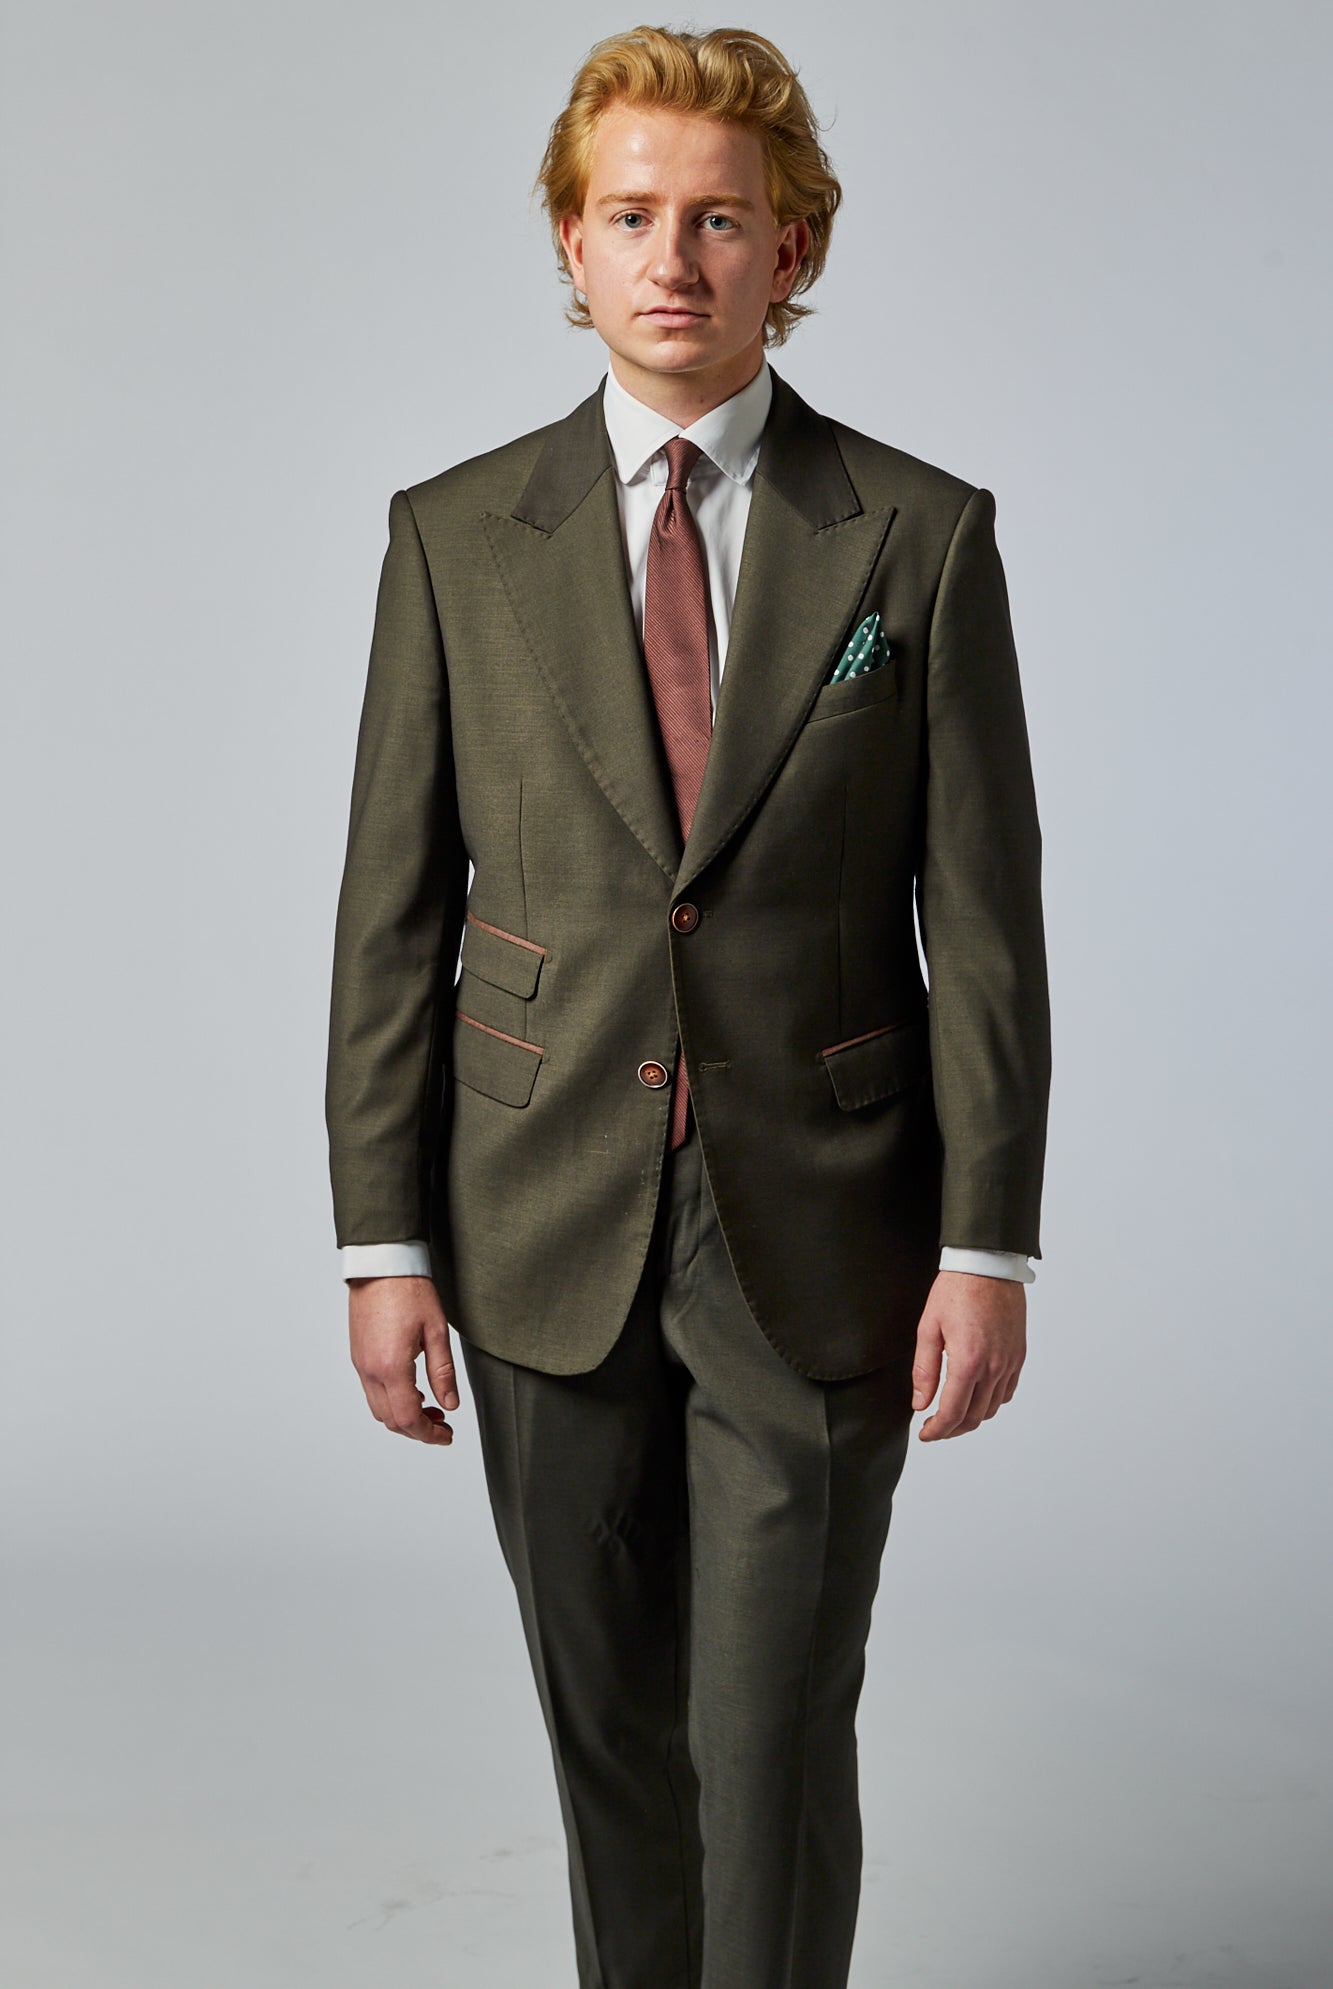 jordfarvet grønt jakkesæt med brunt slips